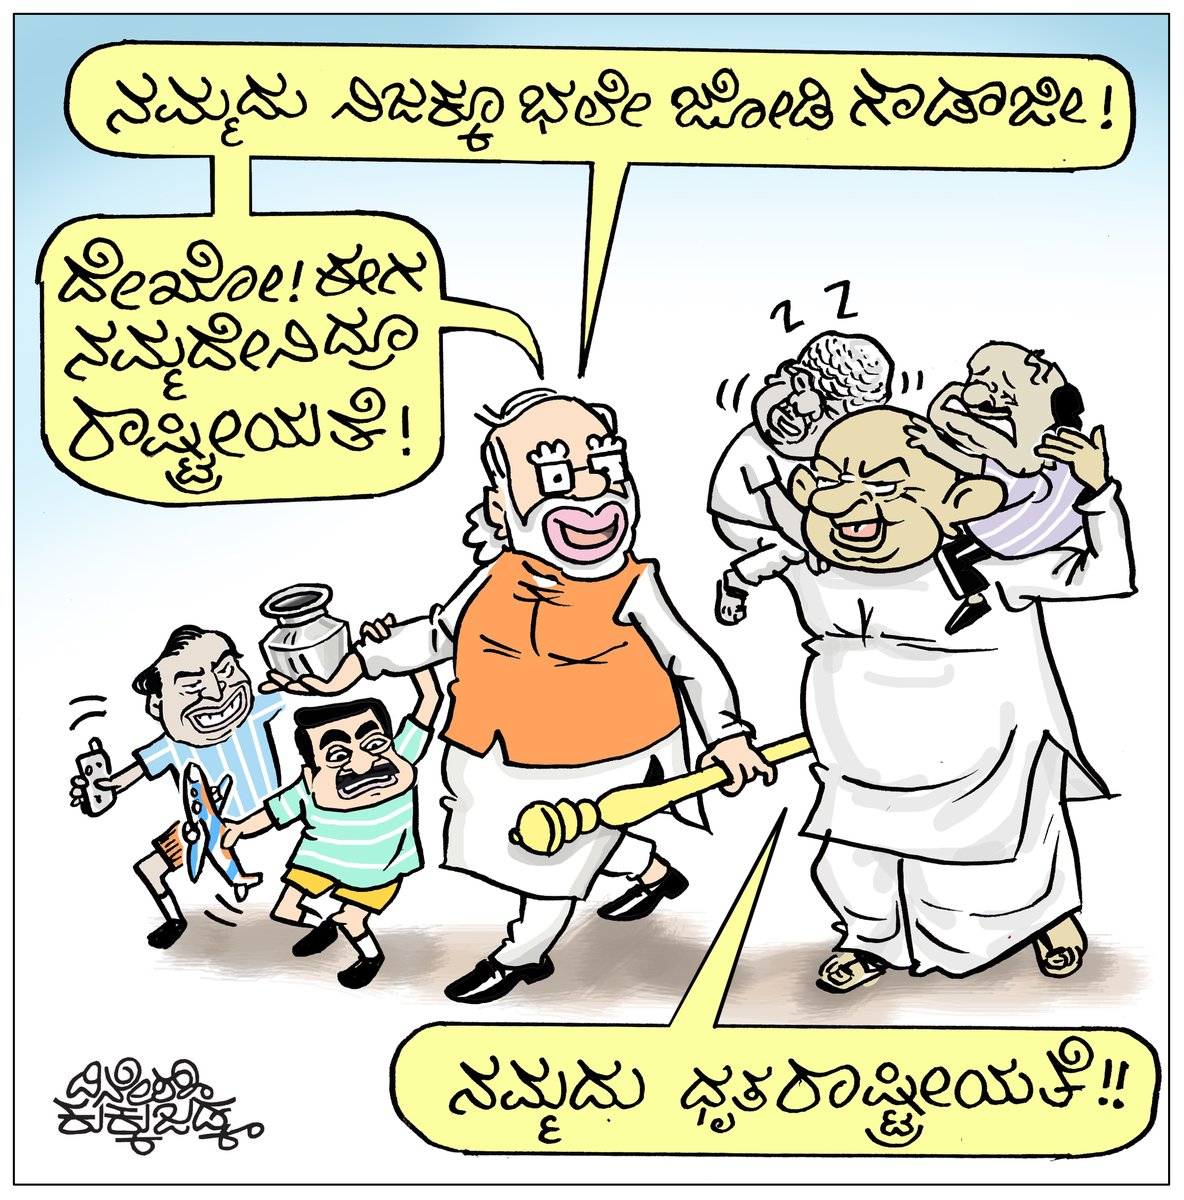 #ModiTohGayo  #ModiKiGuarantee  #RahulGandhi  #ambani #KarnatakaCongress